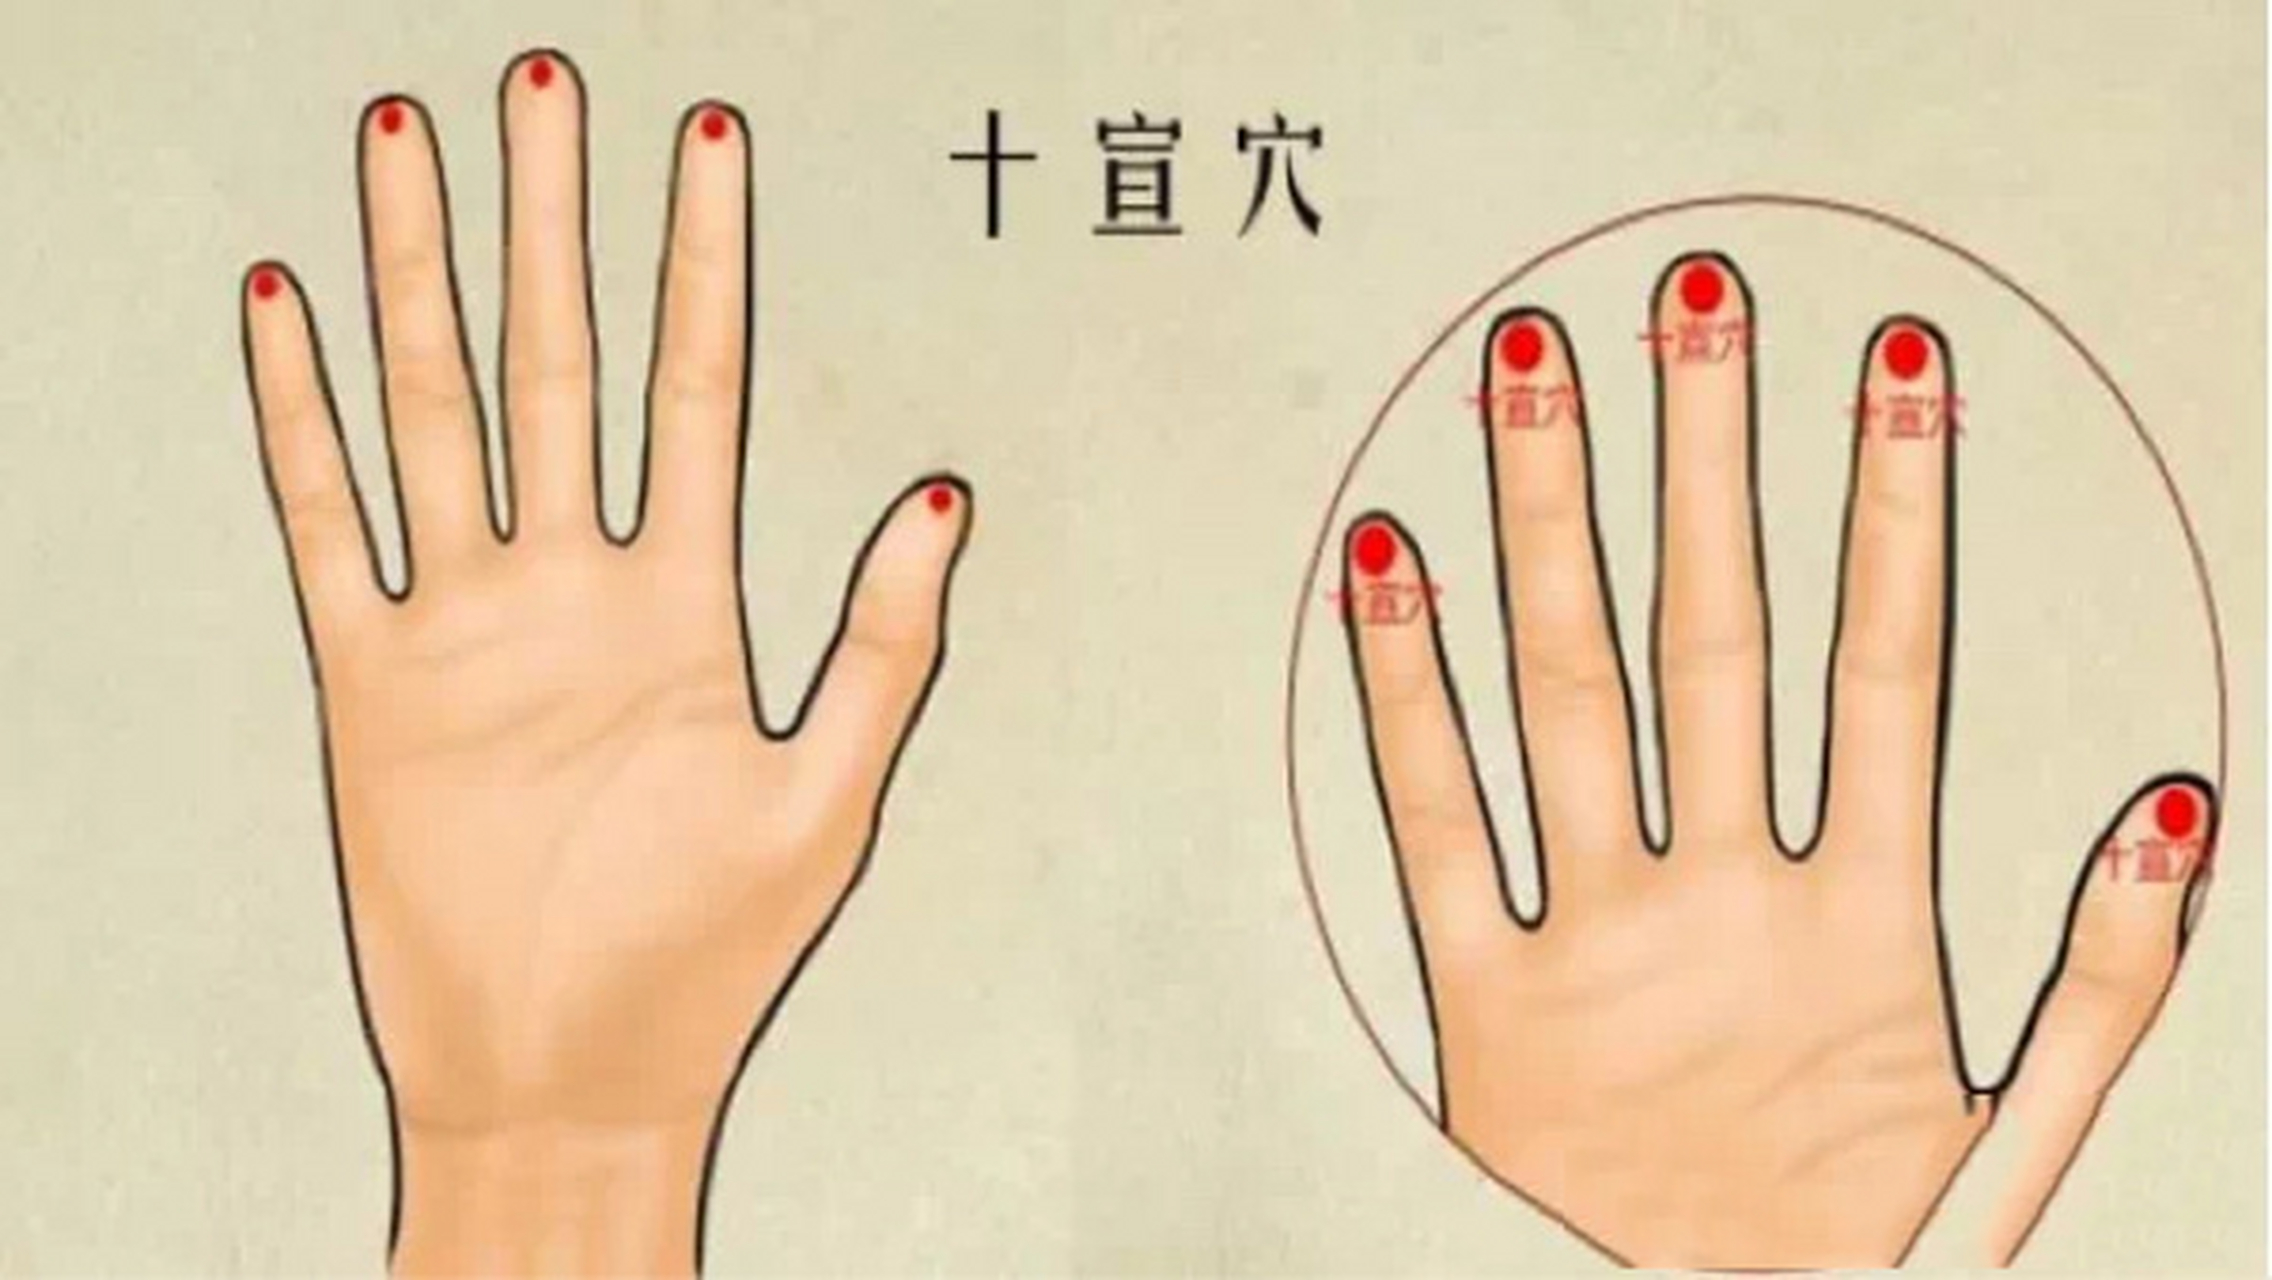 手指放血的位置示意图图片